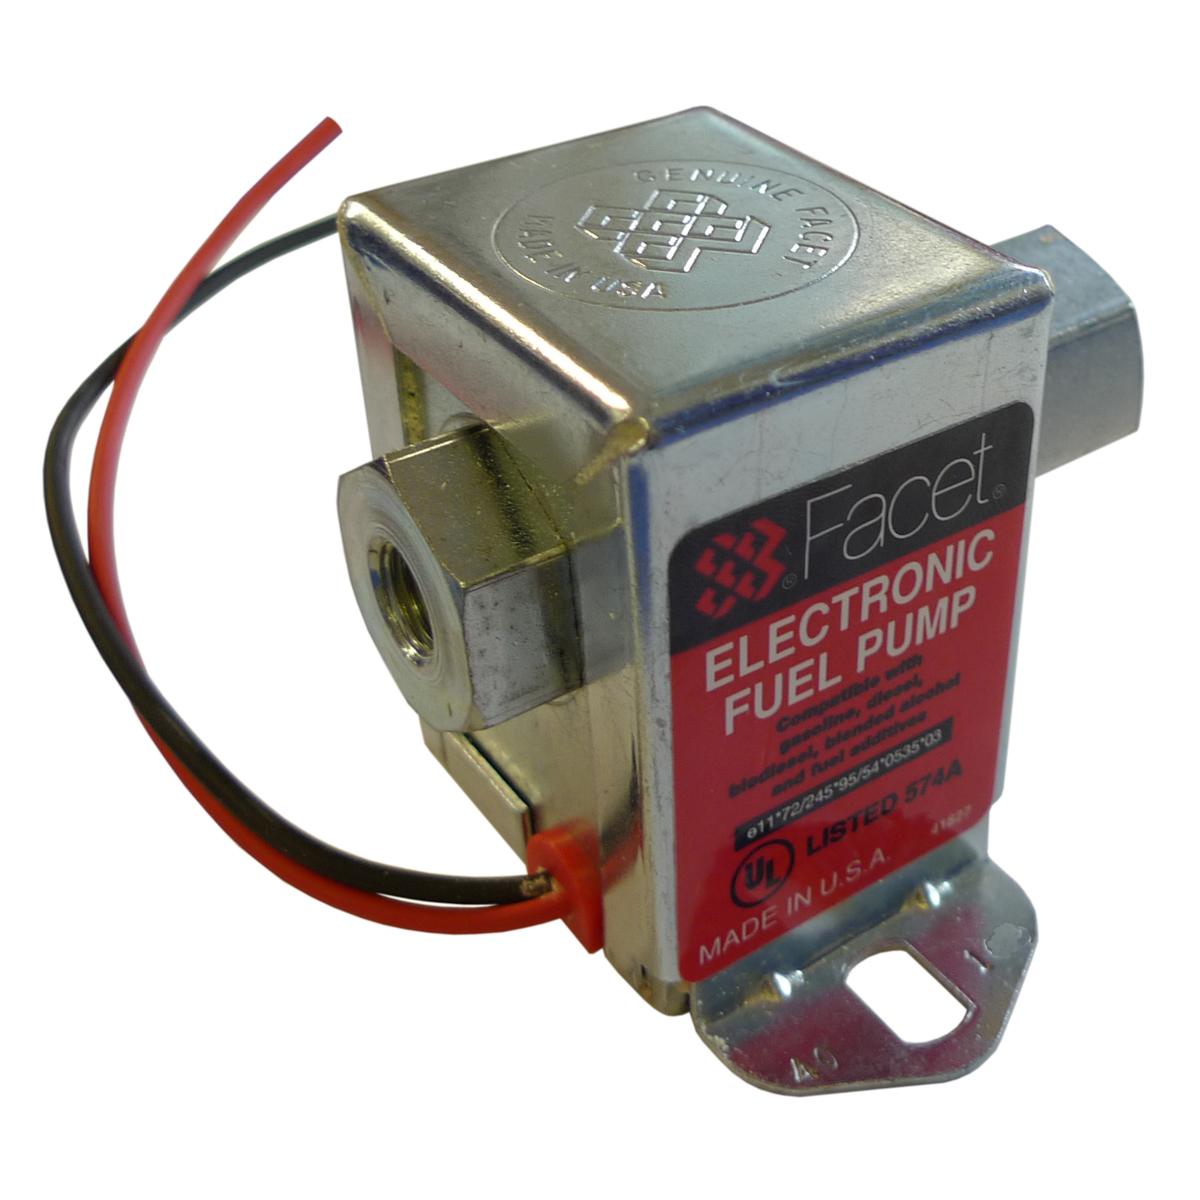 ファセットソリッドステート電動燃料ポンプ1.5-4 PSI - 40104